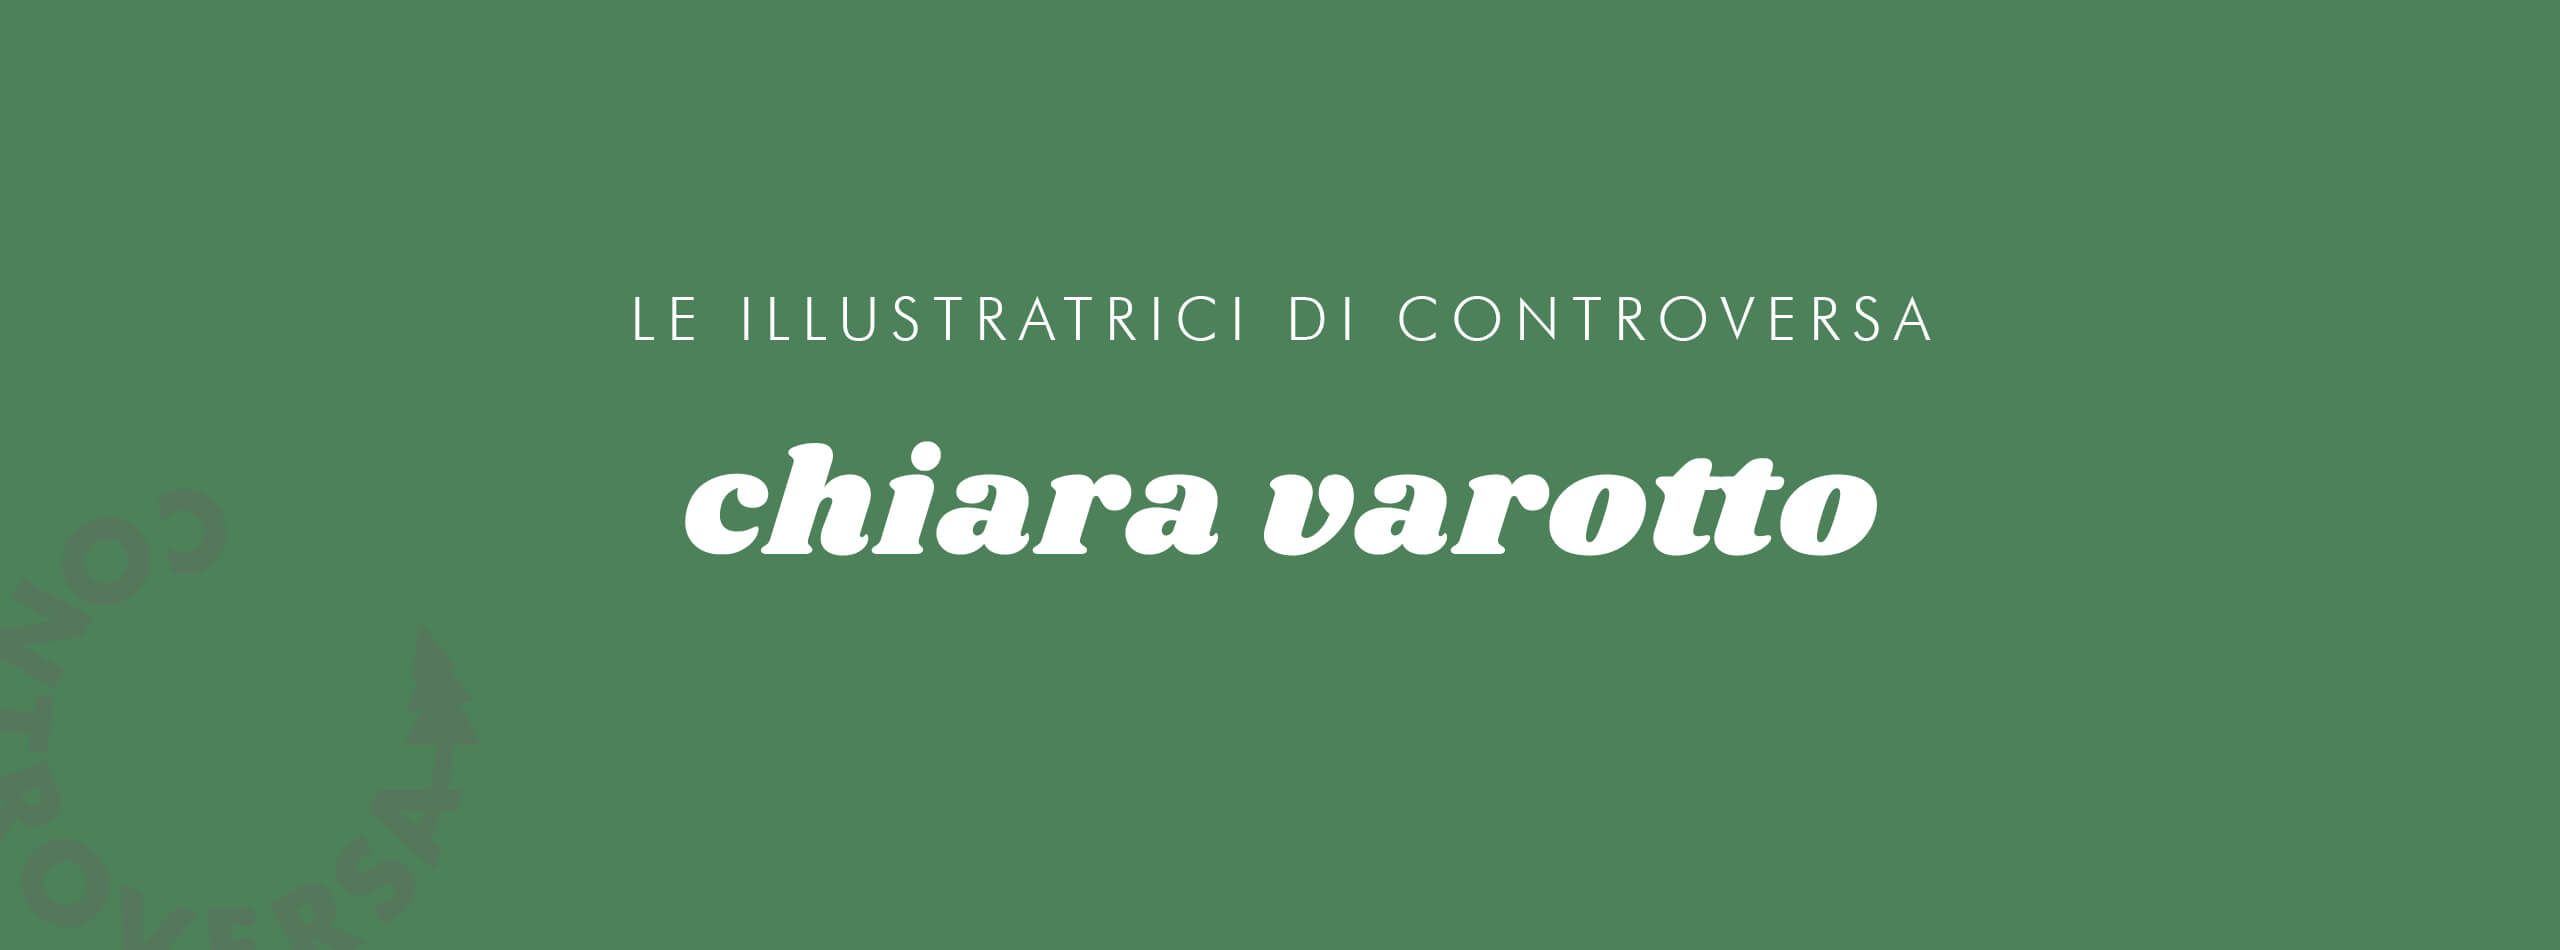 Controversa incontra Chiara Varotto